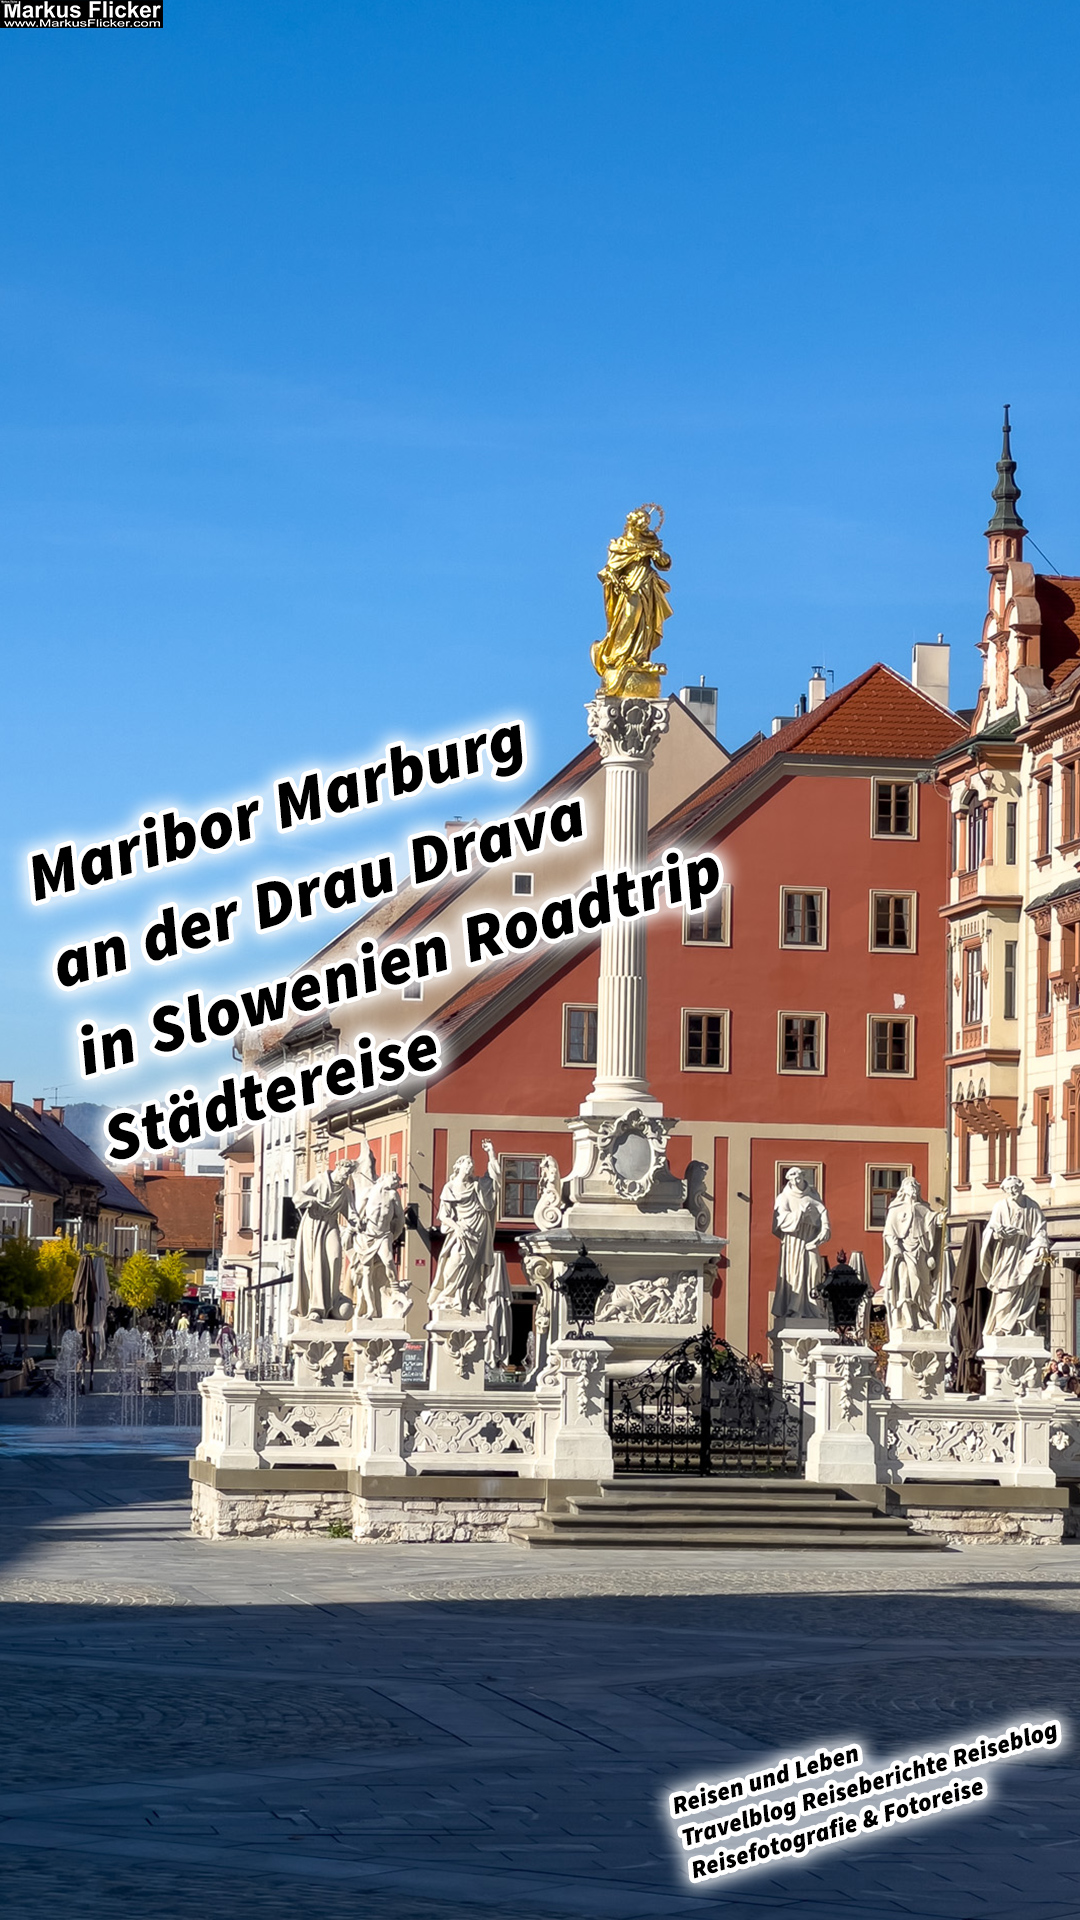 Maribor Marburg an der Drau Drava in Slowenien Roadtrip Städtereise #ifeelsLOVEnia #visitmaribor